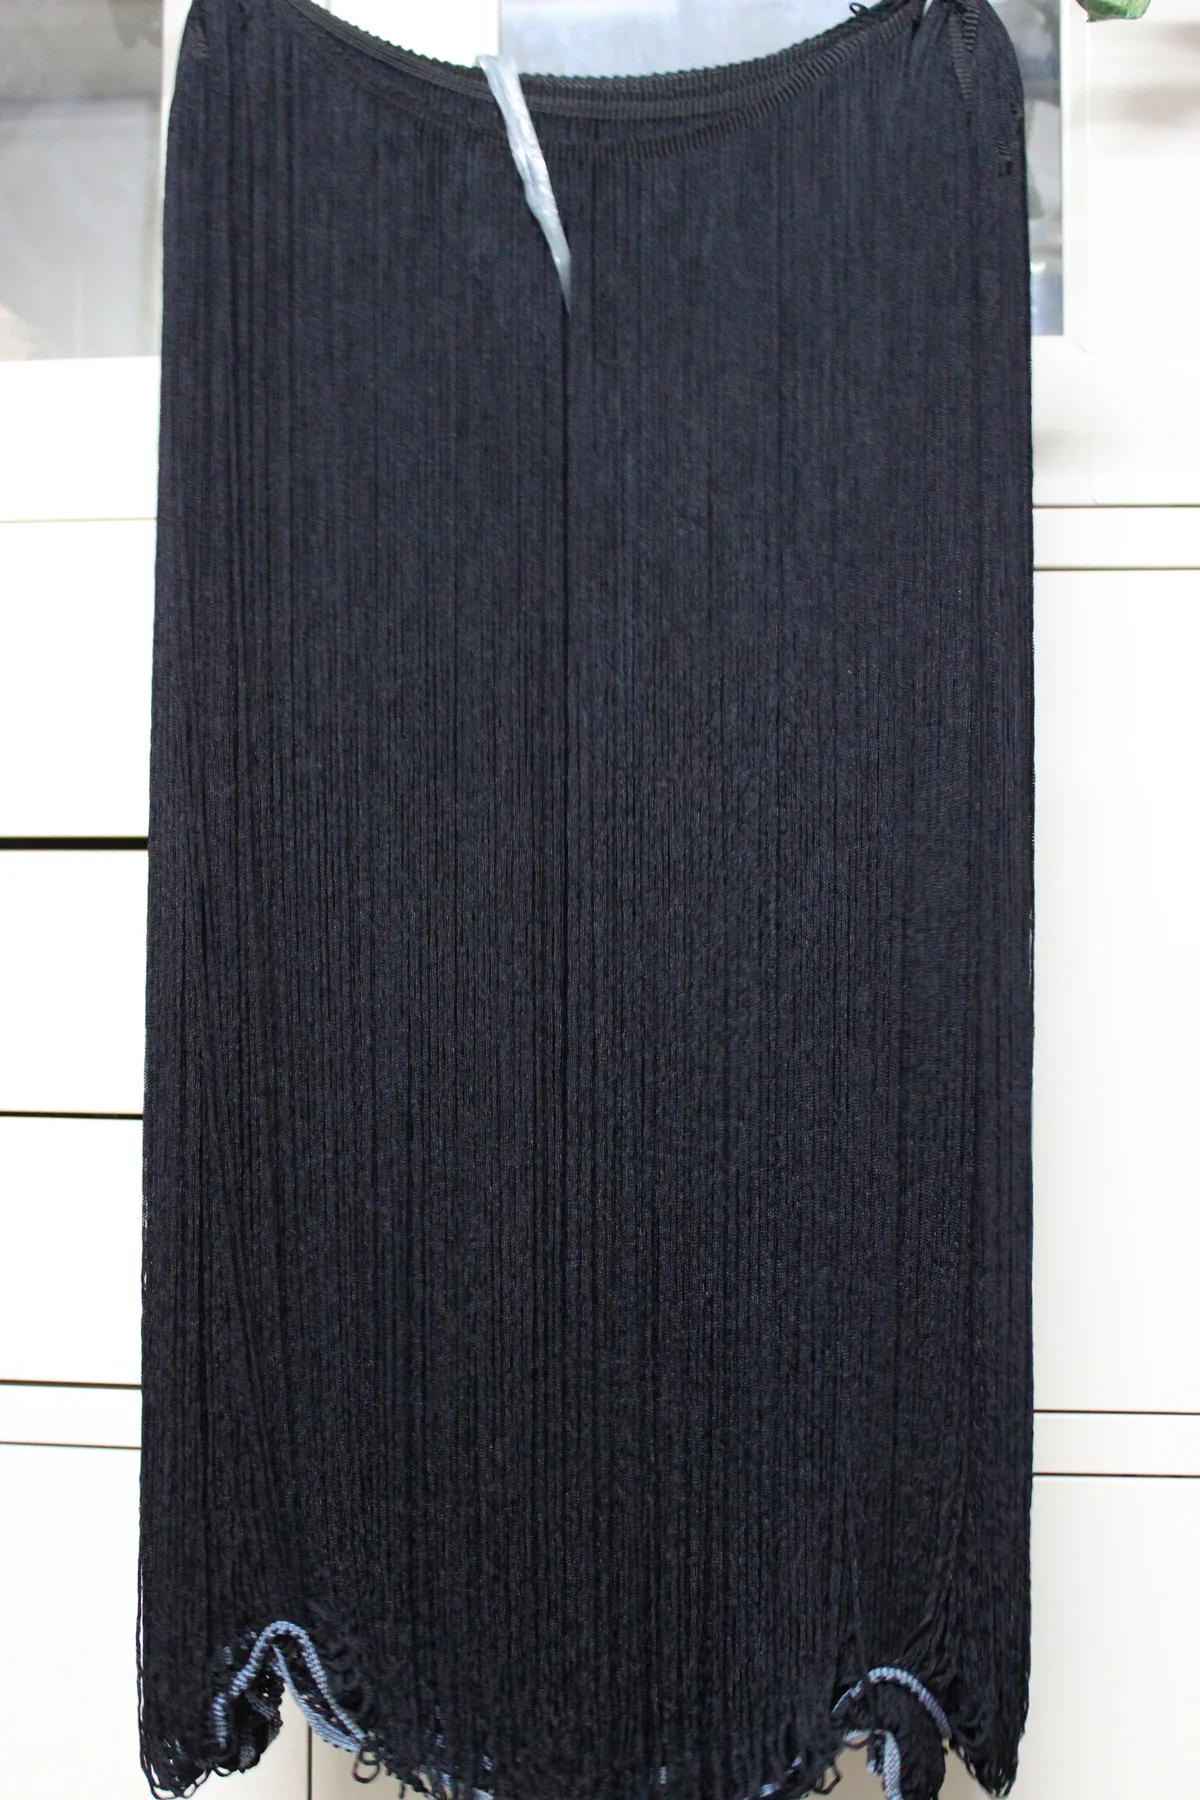 YACKALASI 3 ярдов Длинная Бахрома Кисточкой 60 см белый и черный Dip краситель Омбре кружевное платье с бахромой для латиноамериканских танцев макраме планки